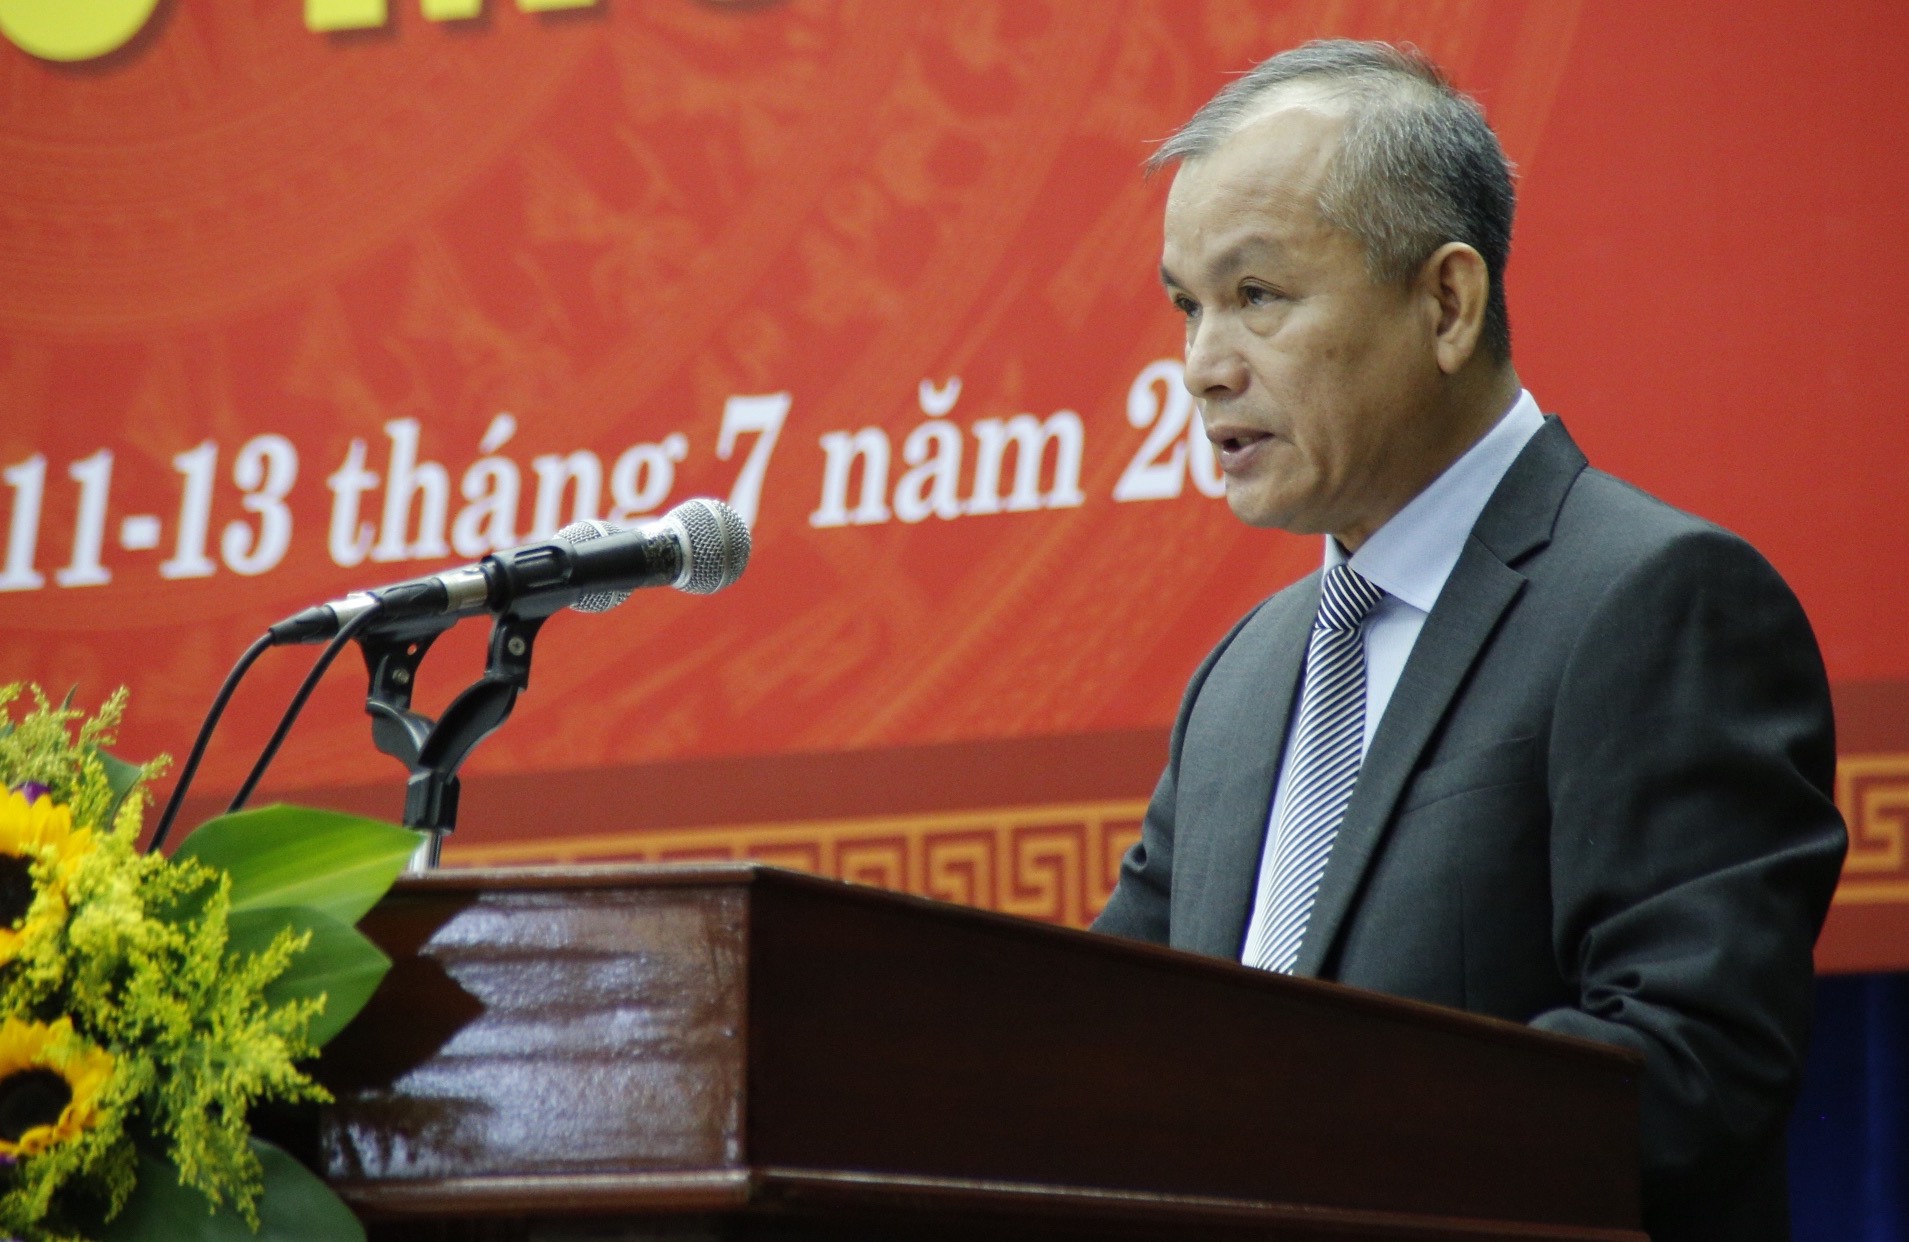 Thanh tra tỉnh Quảng Nam thông tin mới nhất về con dấu trong văn bản thiếu ký hiệu quần đảo Hoàng Sa - Ảnh 1.